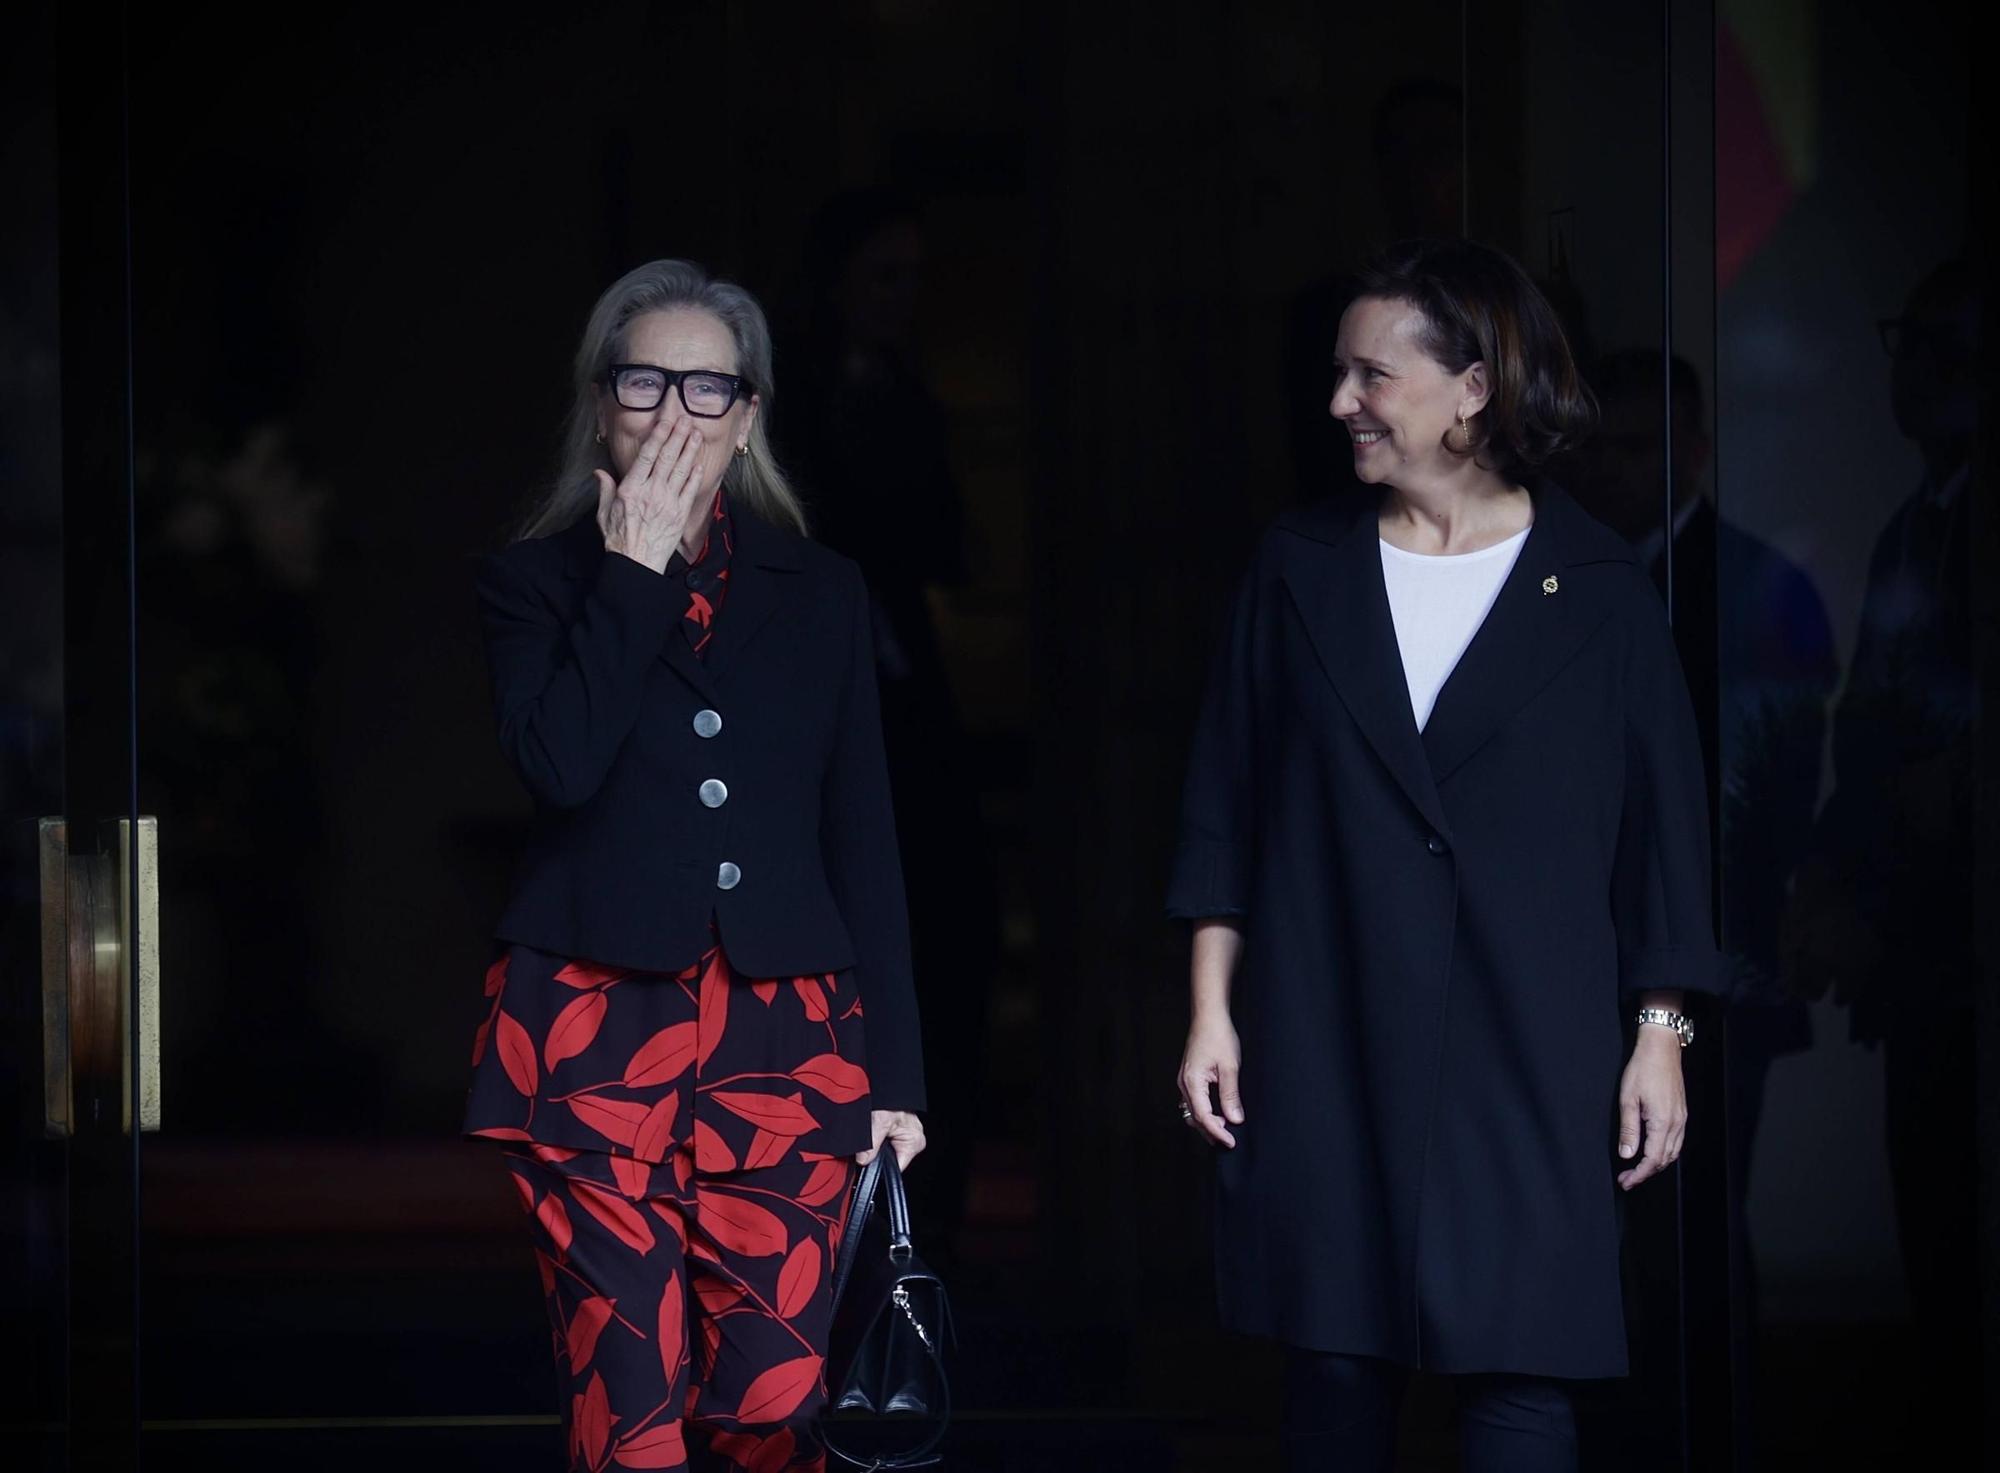 EN IMÁGENES: Así fue la llegada oficial de Meryl Streep a Asturias para recibir el premio "Princesa" de las Artes